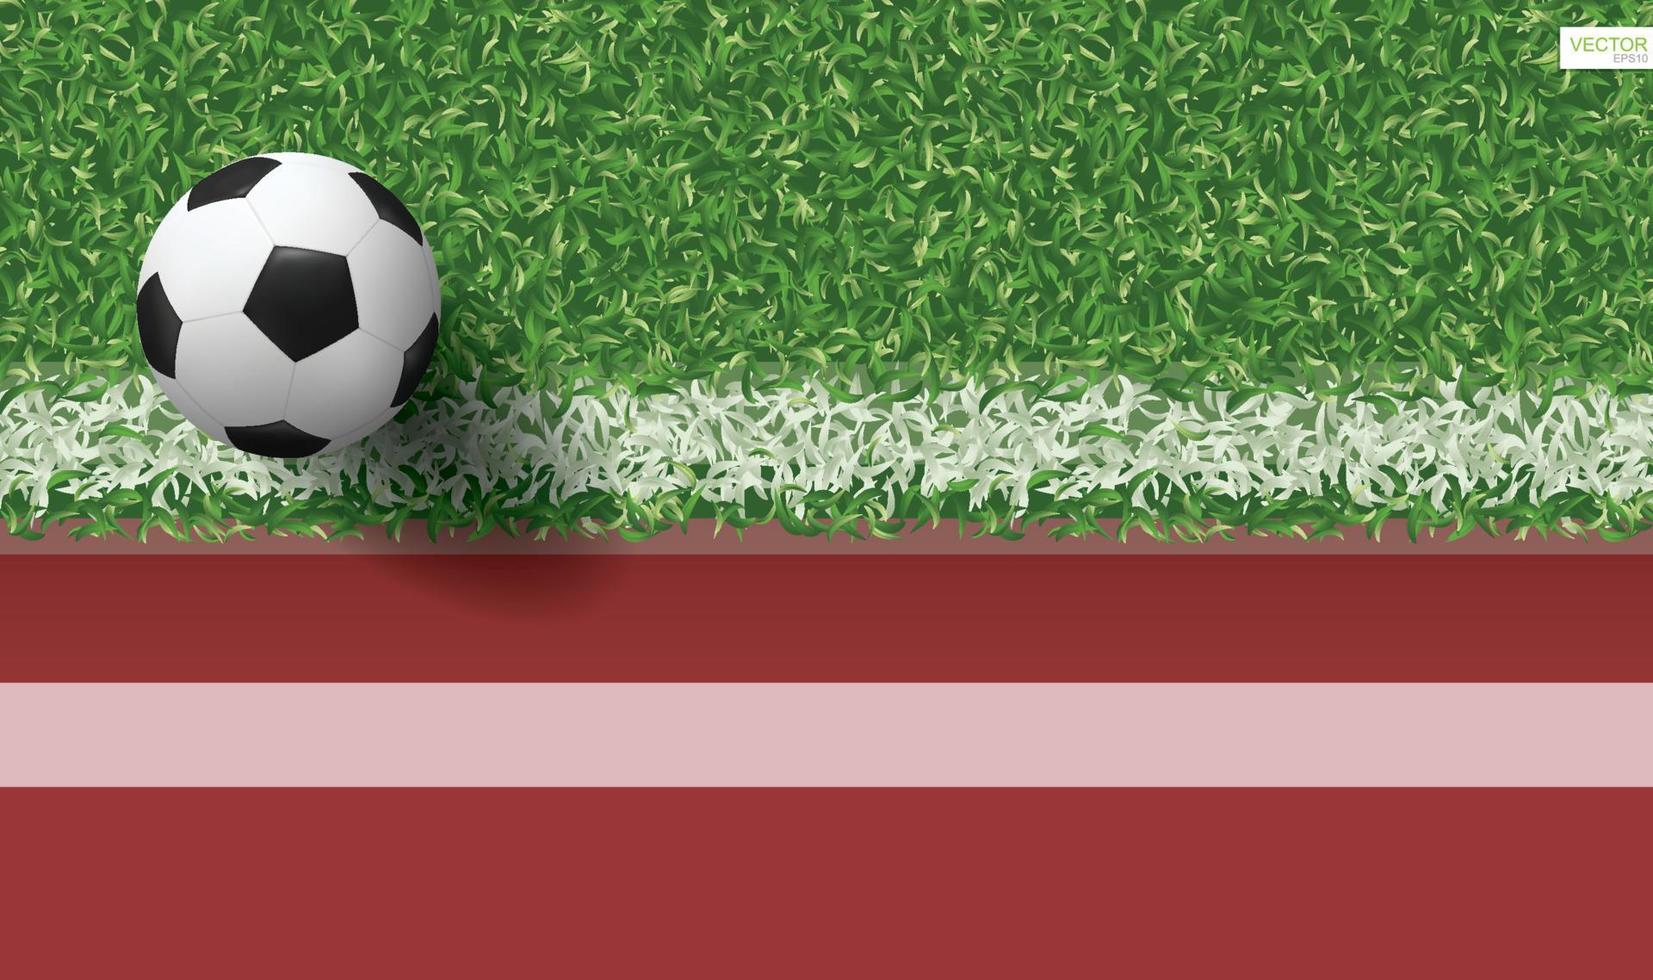 voetbal voetbal bal op groen gras van voetbalveld met atletiekbaan voor sport achtergrond. vectorillustratie. vector